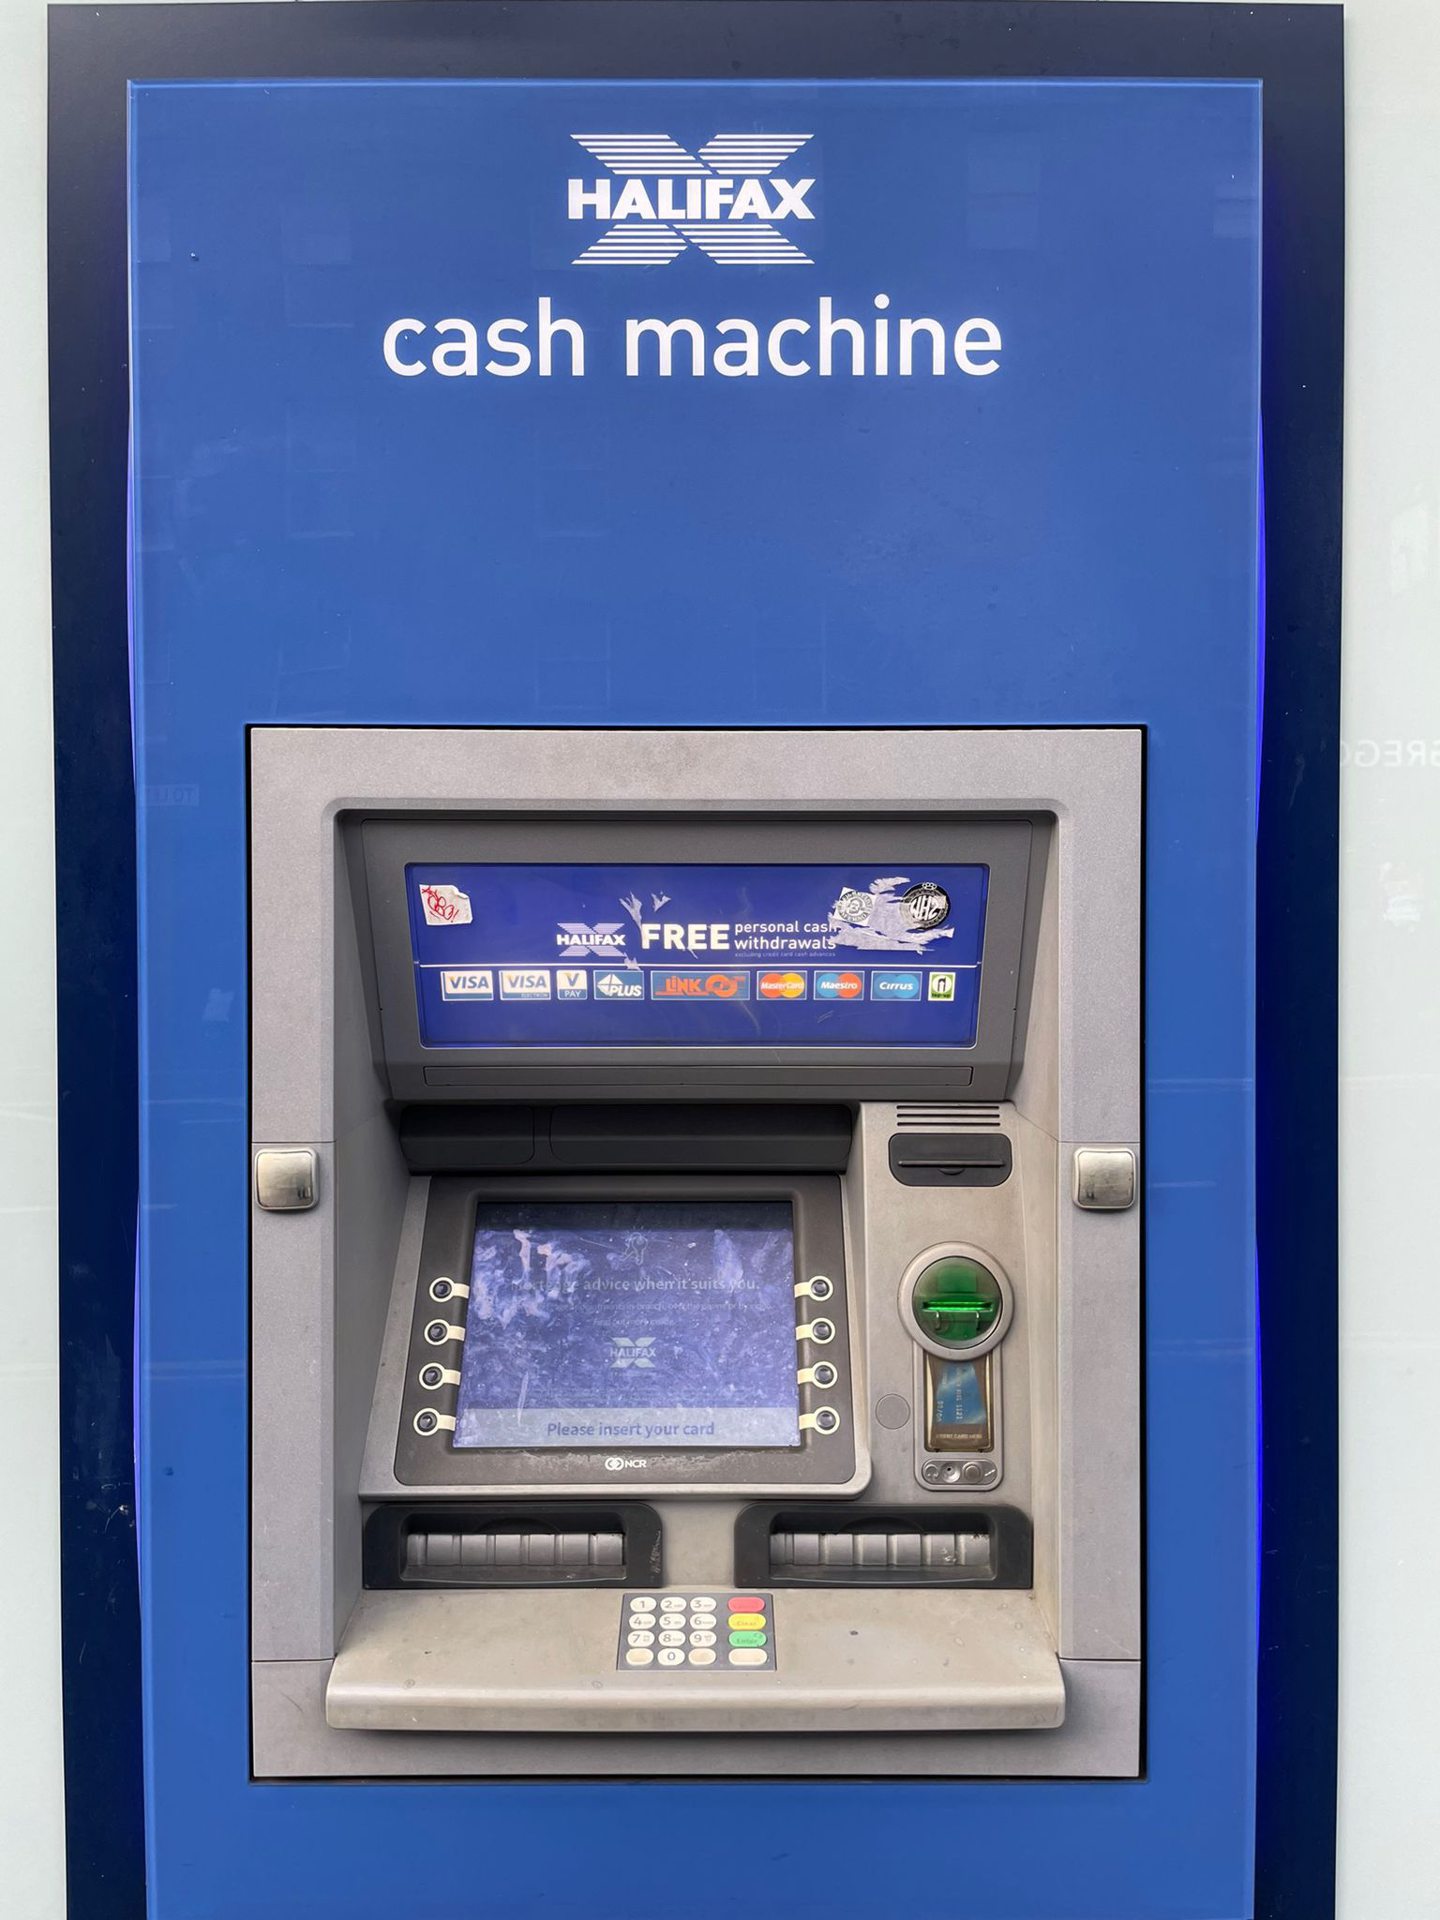 A Halifax cash machine